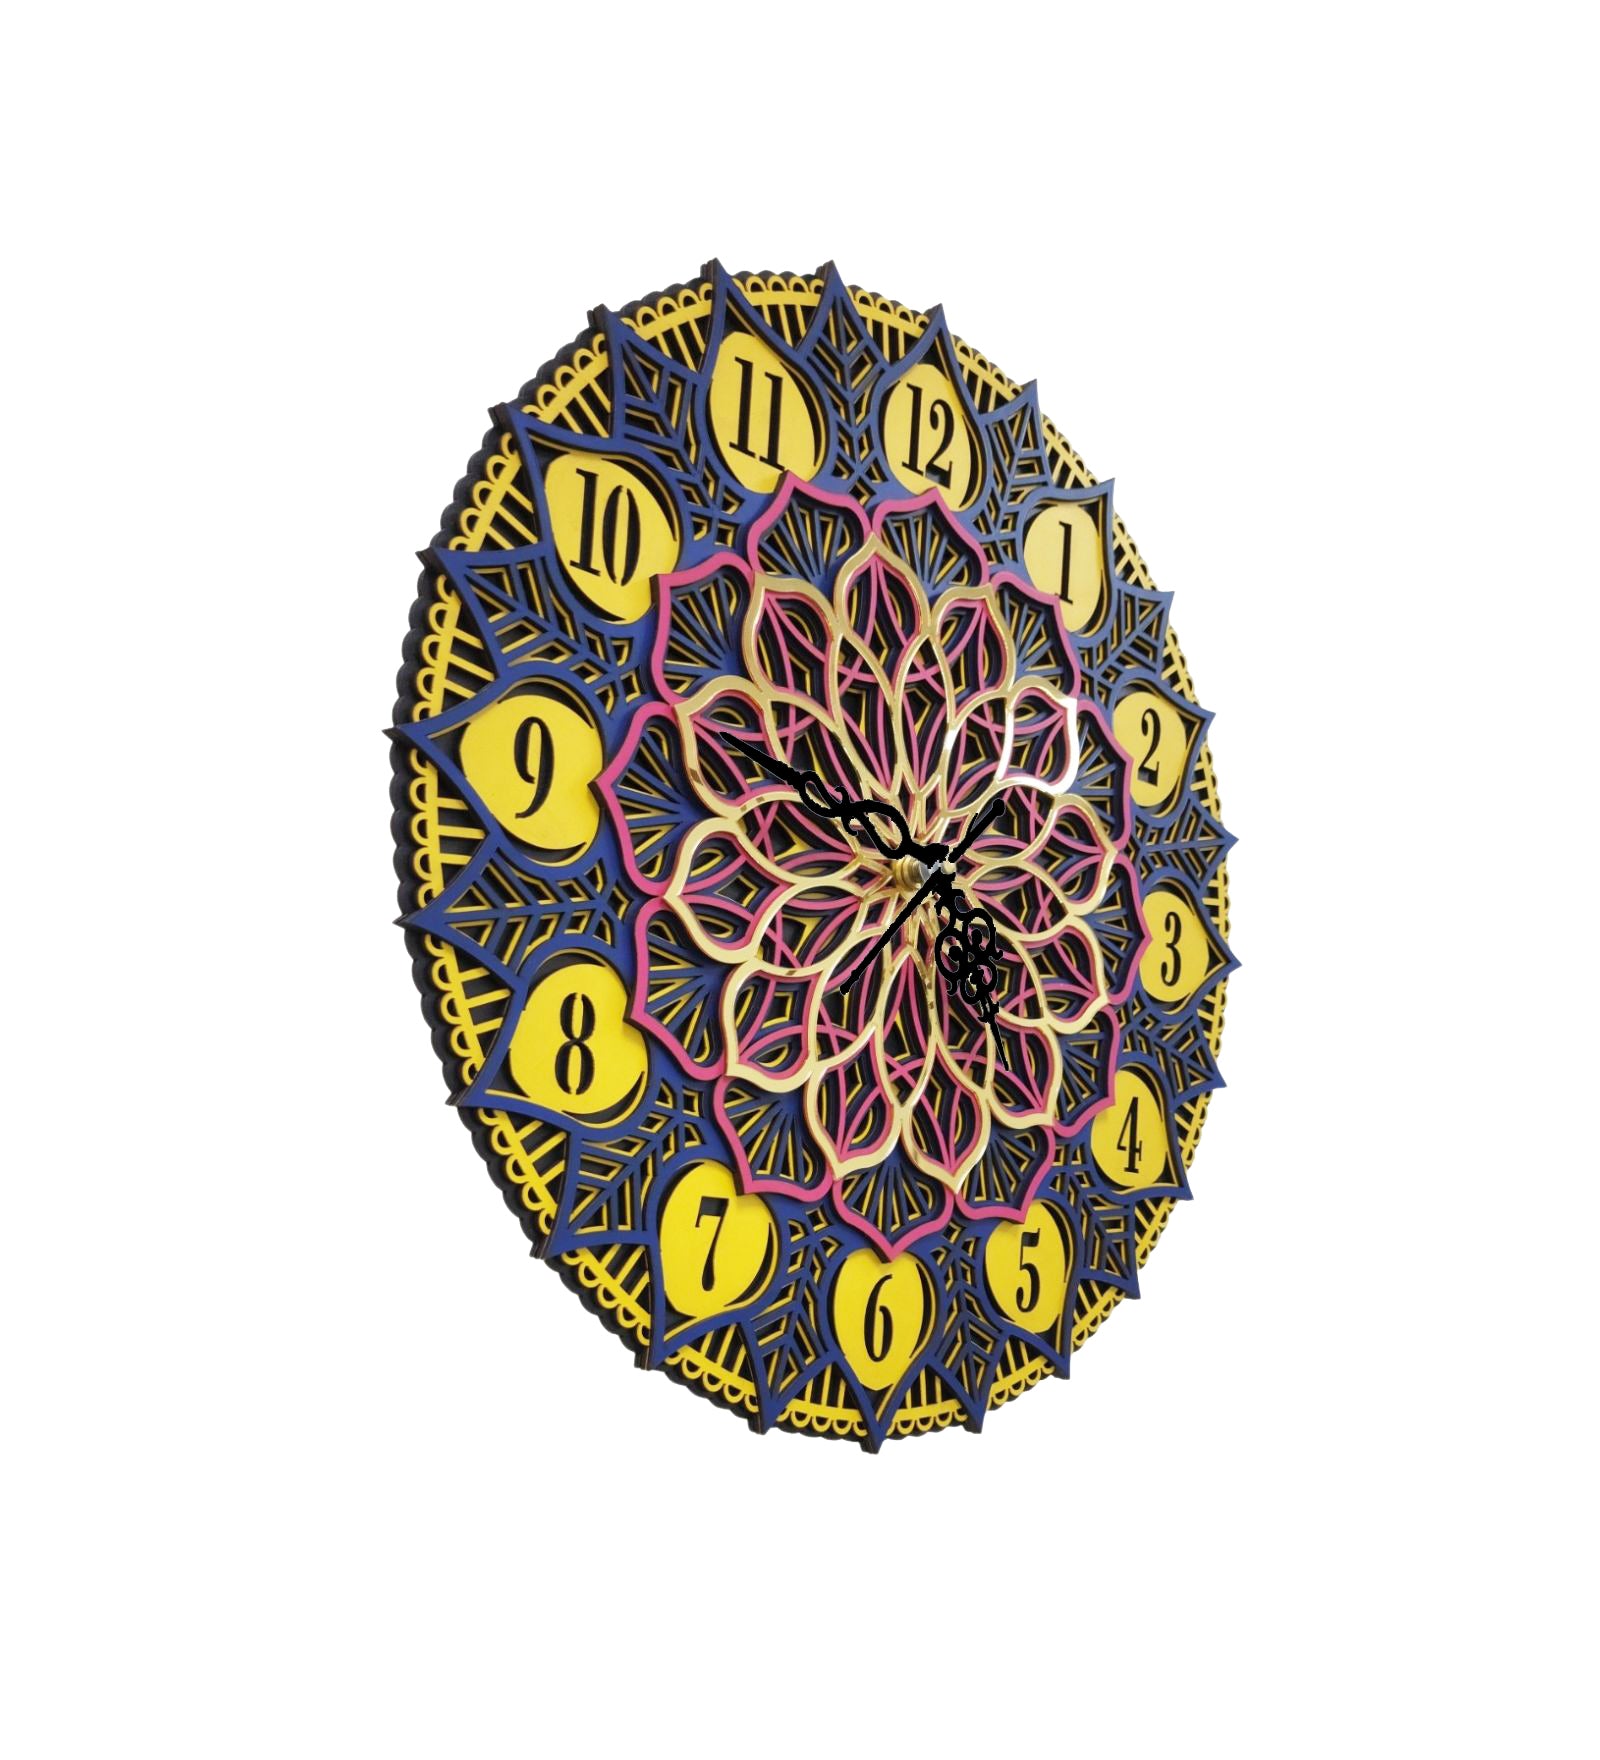 3D Flower Mandala Clock